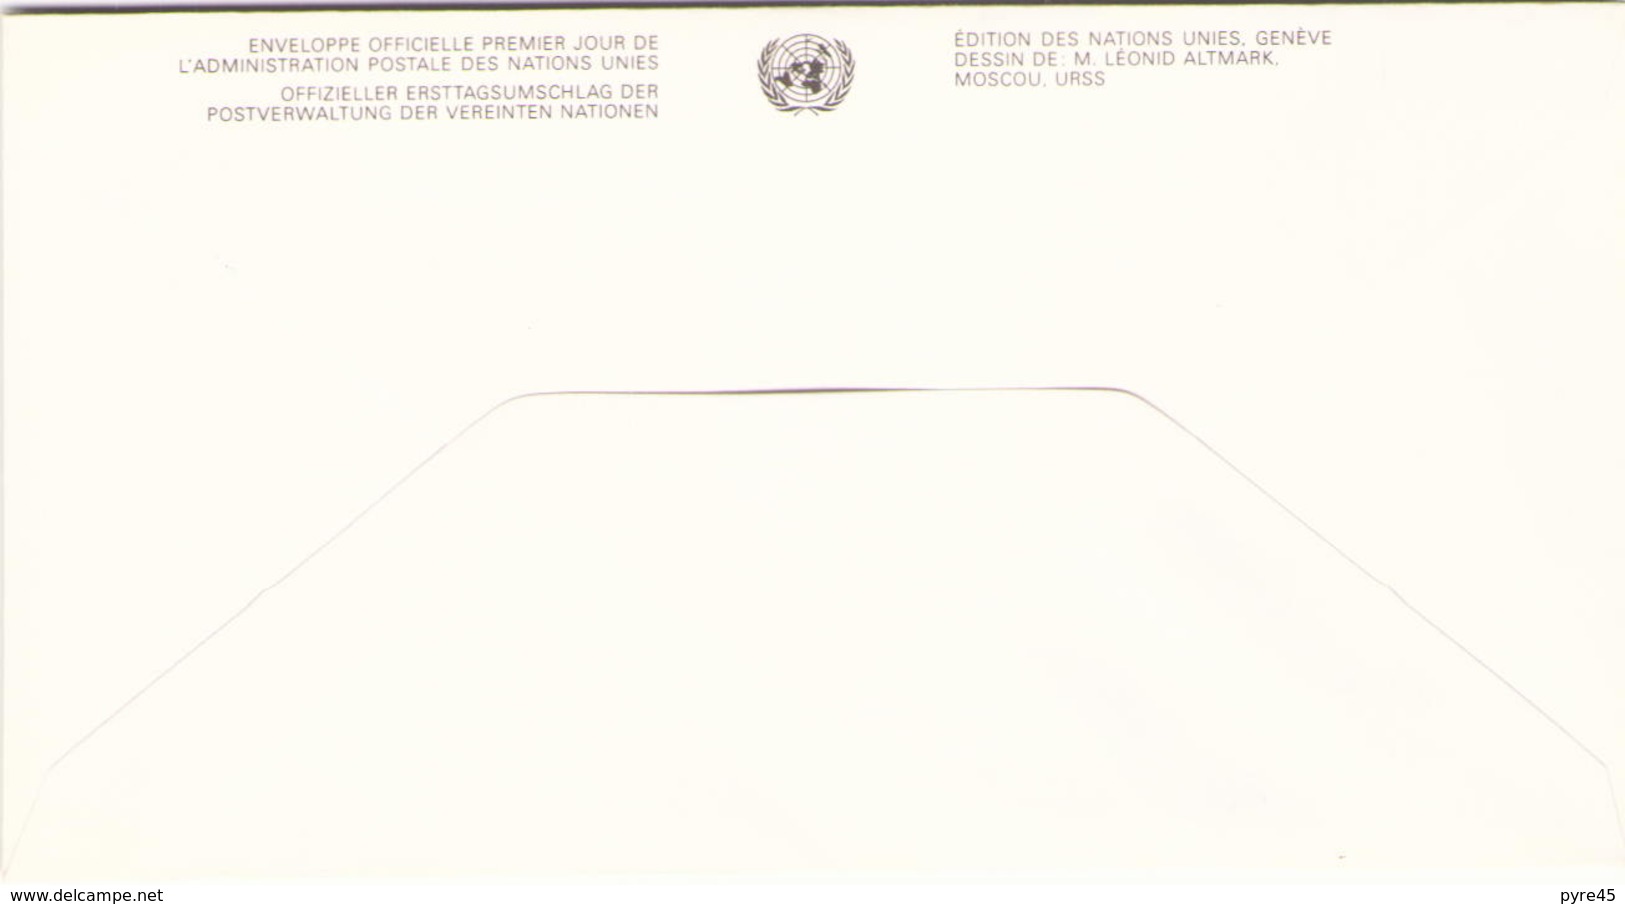 NATIONS UNIES FDC DU 20 NOVEMBRE 1991 VIENNE SERIE DES DROITS DE L HOMME - Covers & Documents